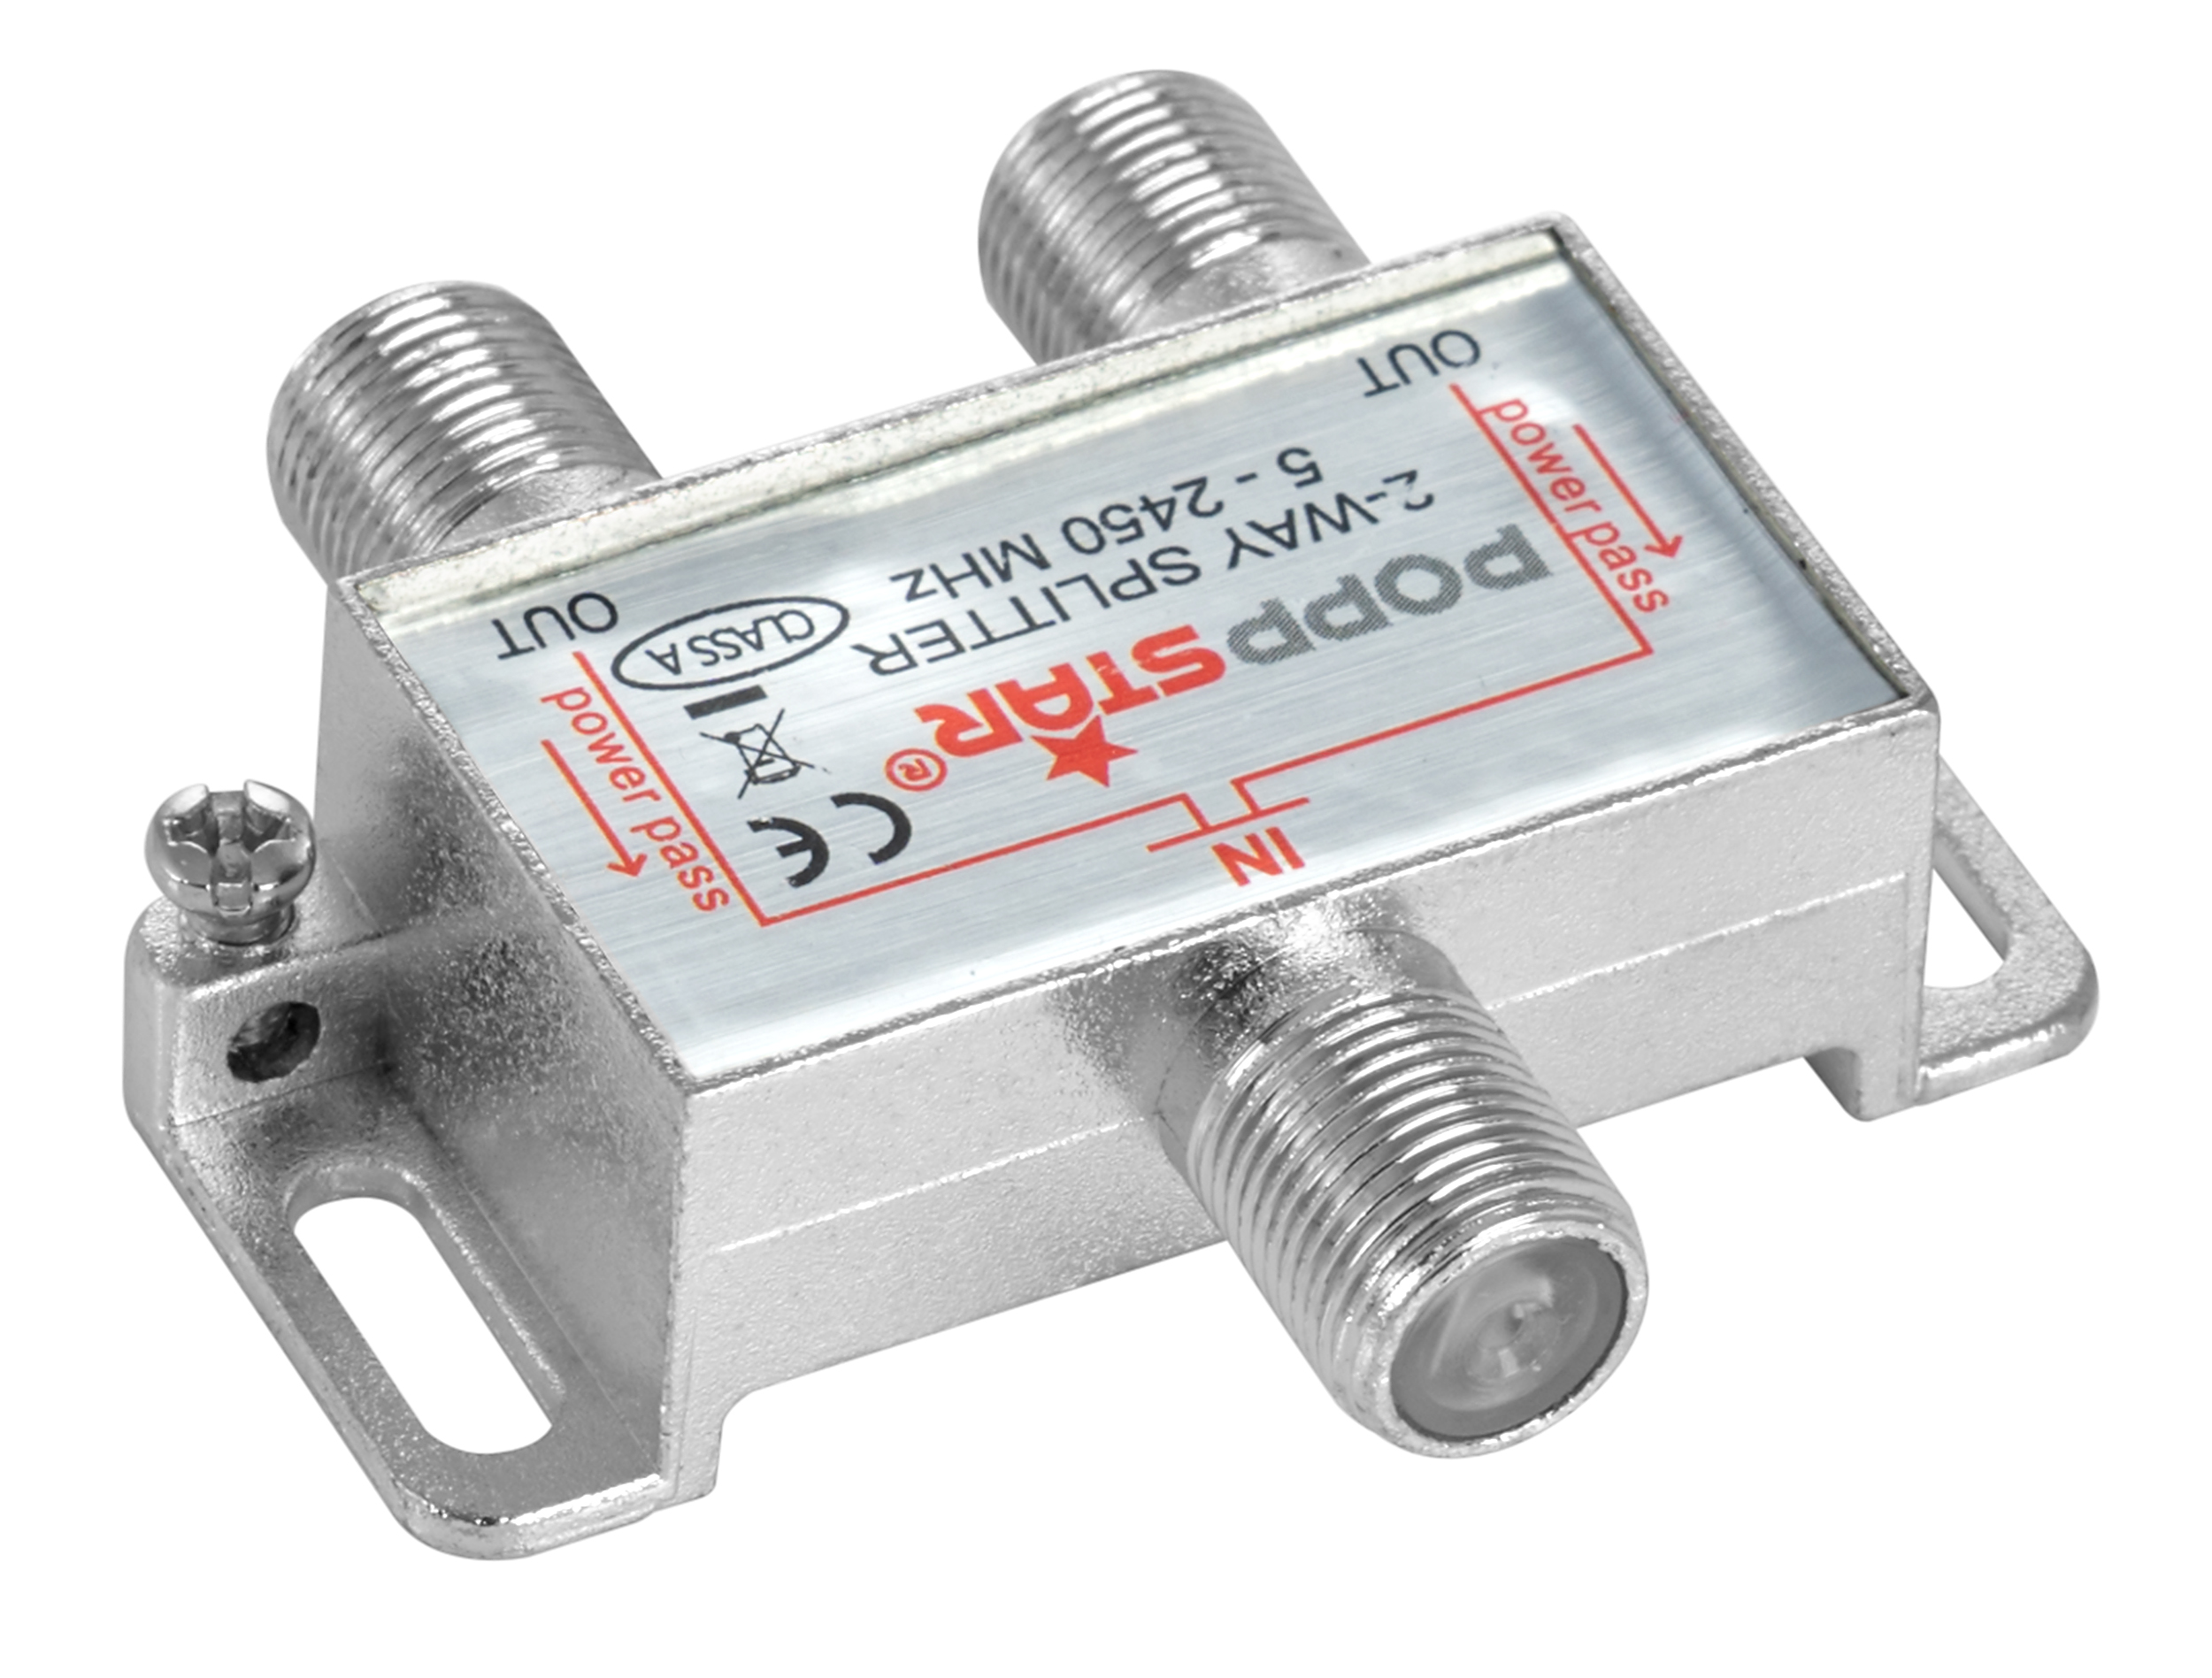 SAT Verteiler mit 2 Ausgängen + 3 Adapter (F-Stecker auf IEC)